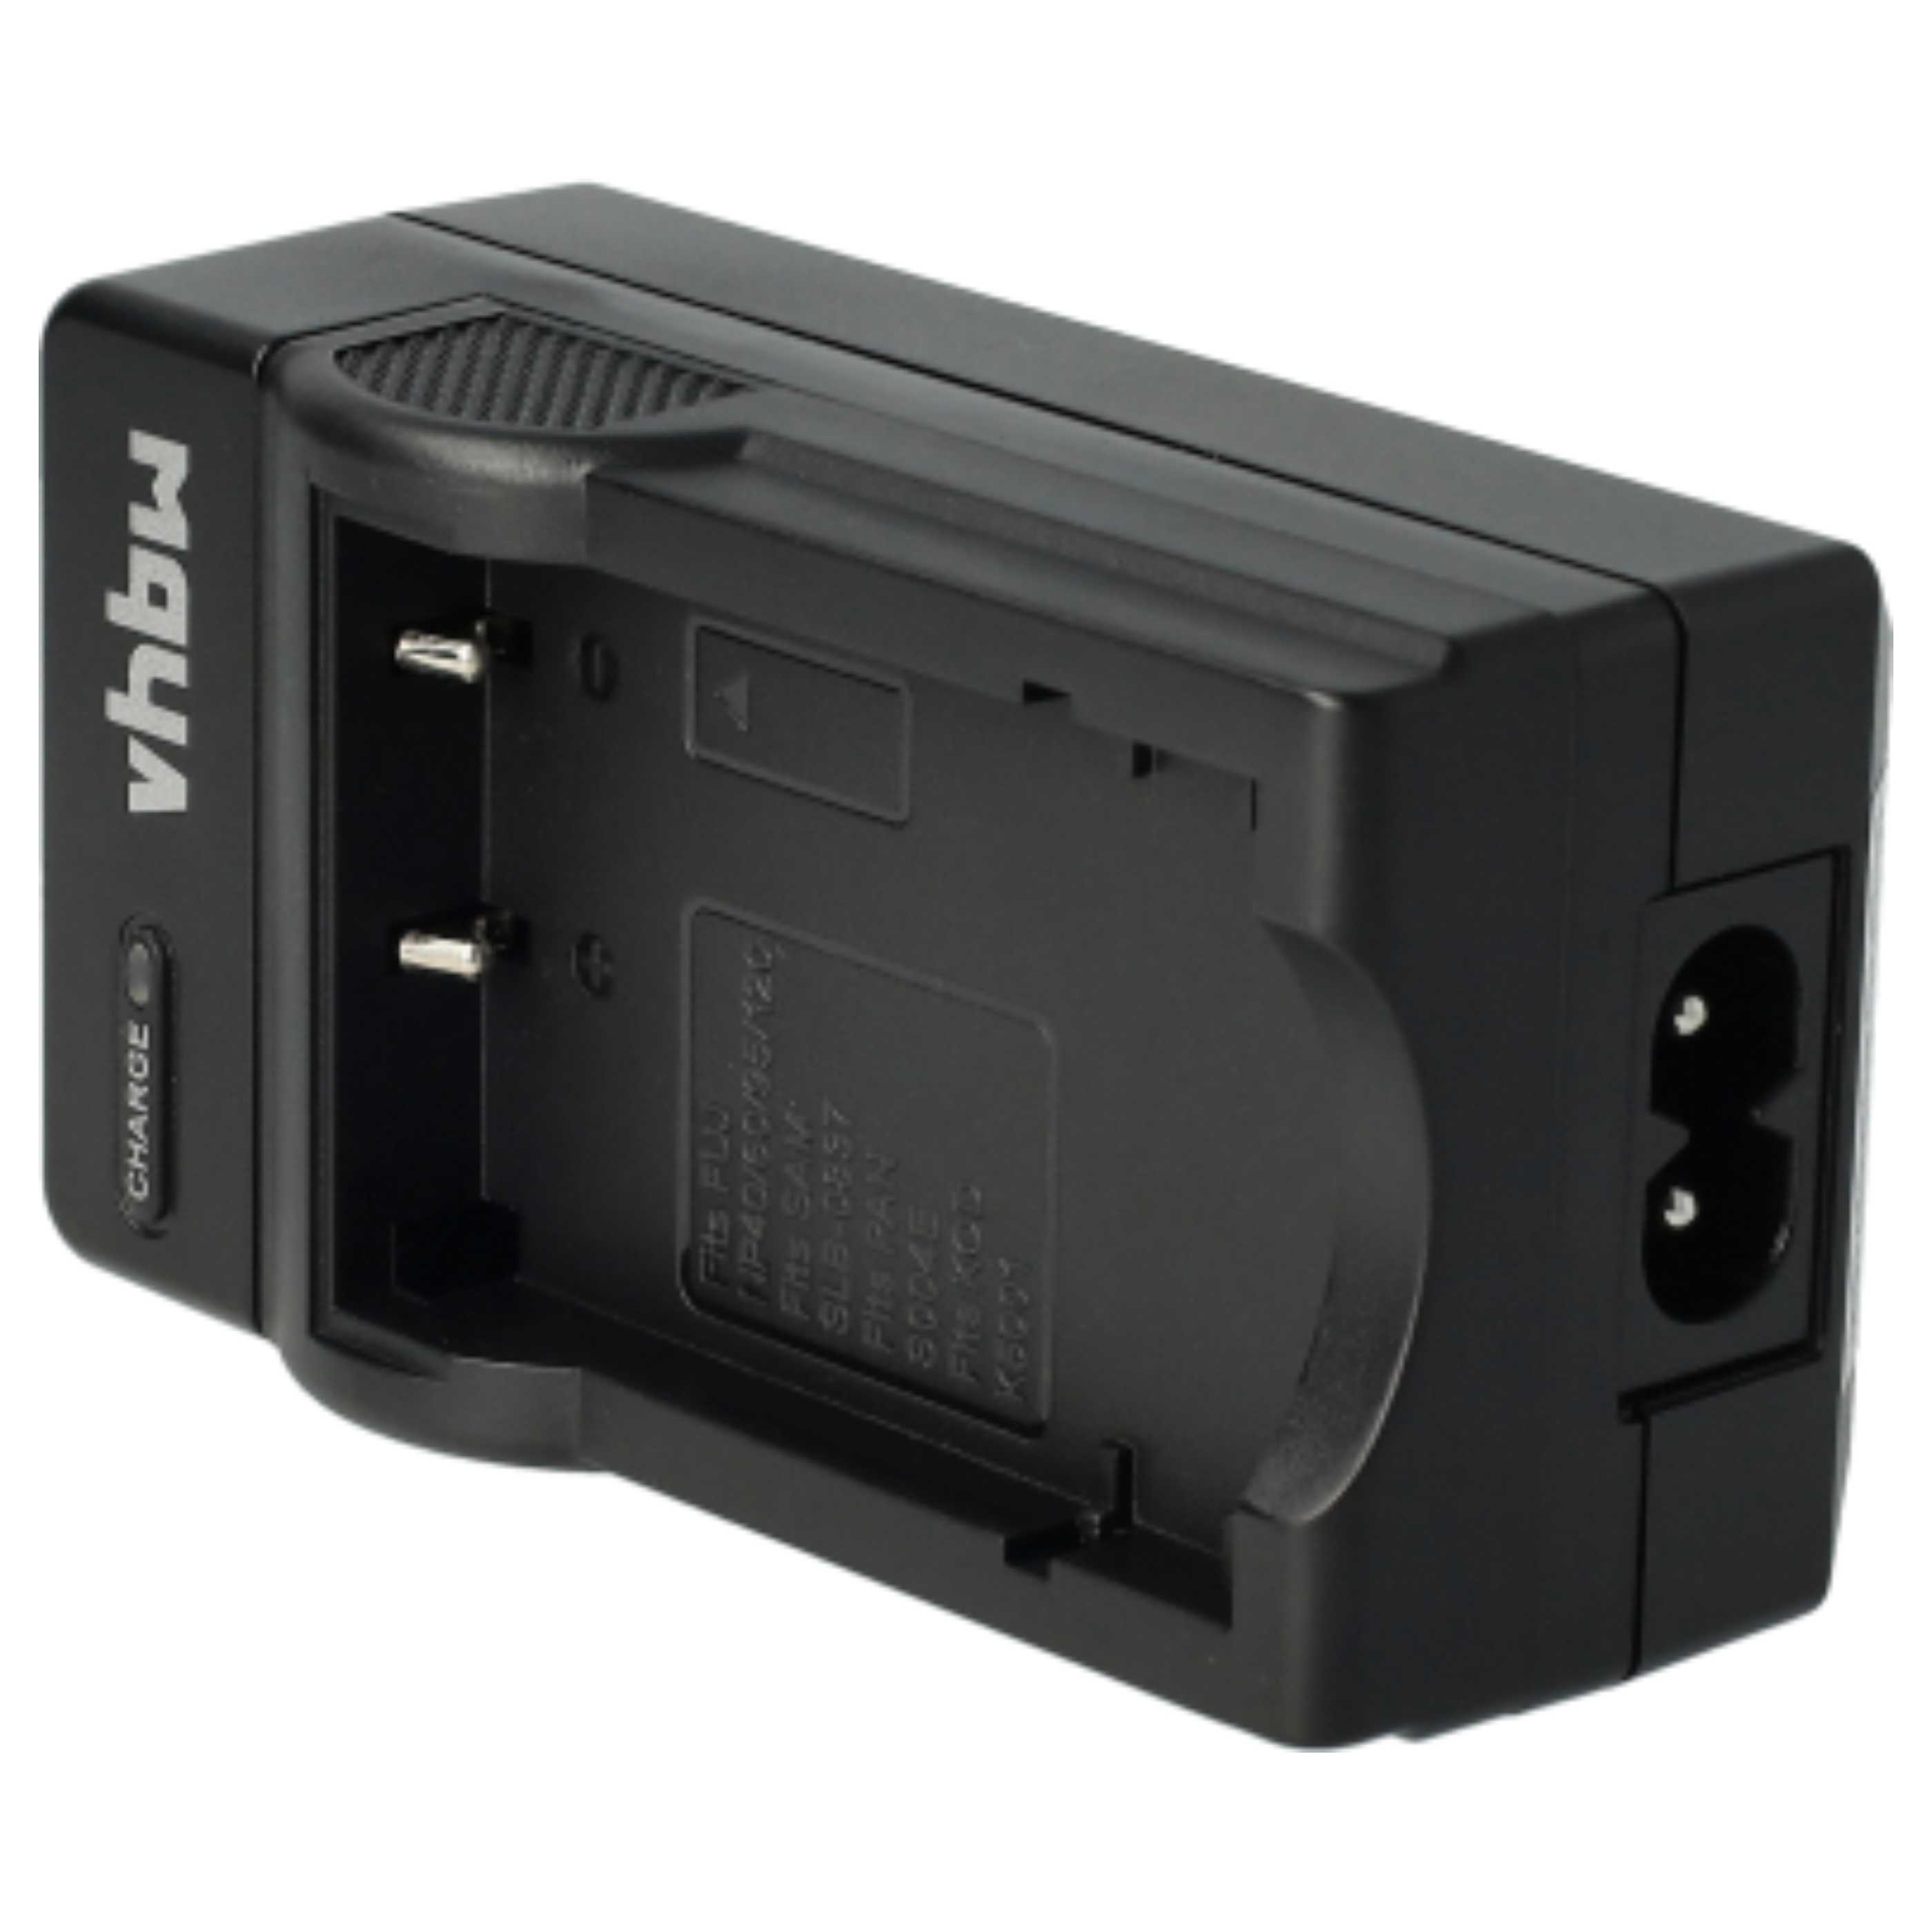 Akku Ladegerät passend für Optio E75 Kamera u.a. - 0,6 A, 4,2 V